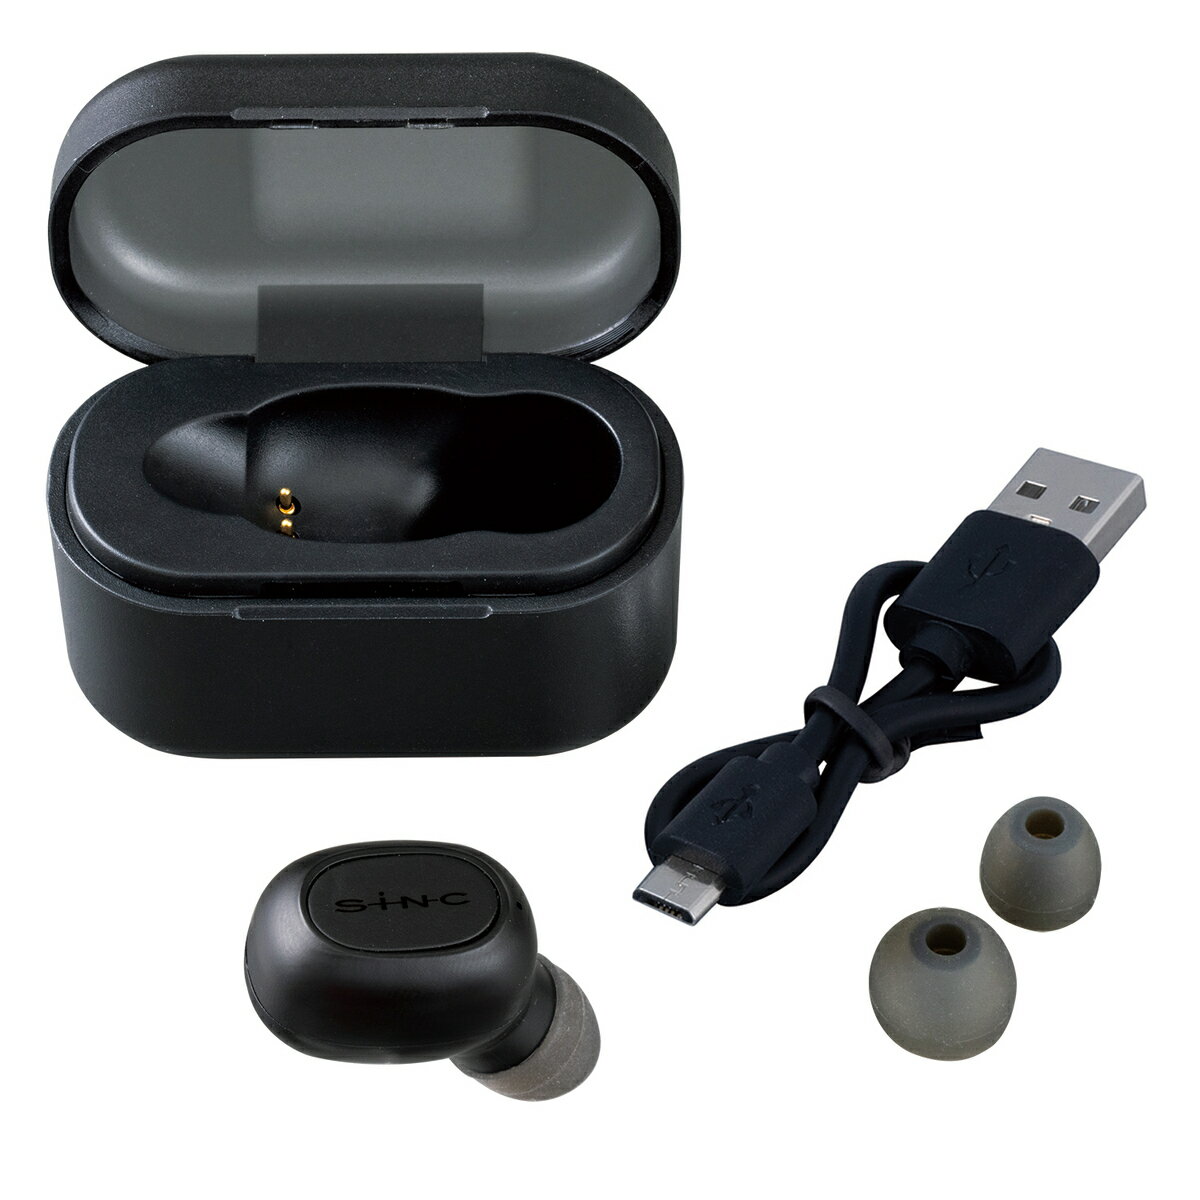 セイワ(SEIWA) カー用品 Bluetoothワイヤレスイヤホンマイク BTE180 Bluetooth ver,5.1 ブラック メーカー直販 プレゼント